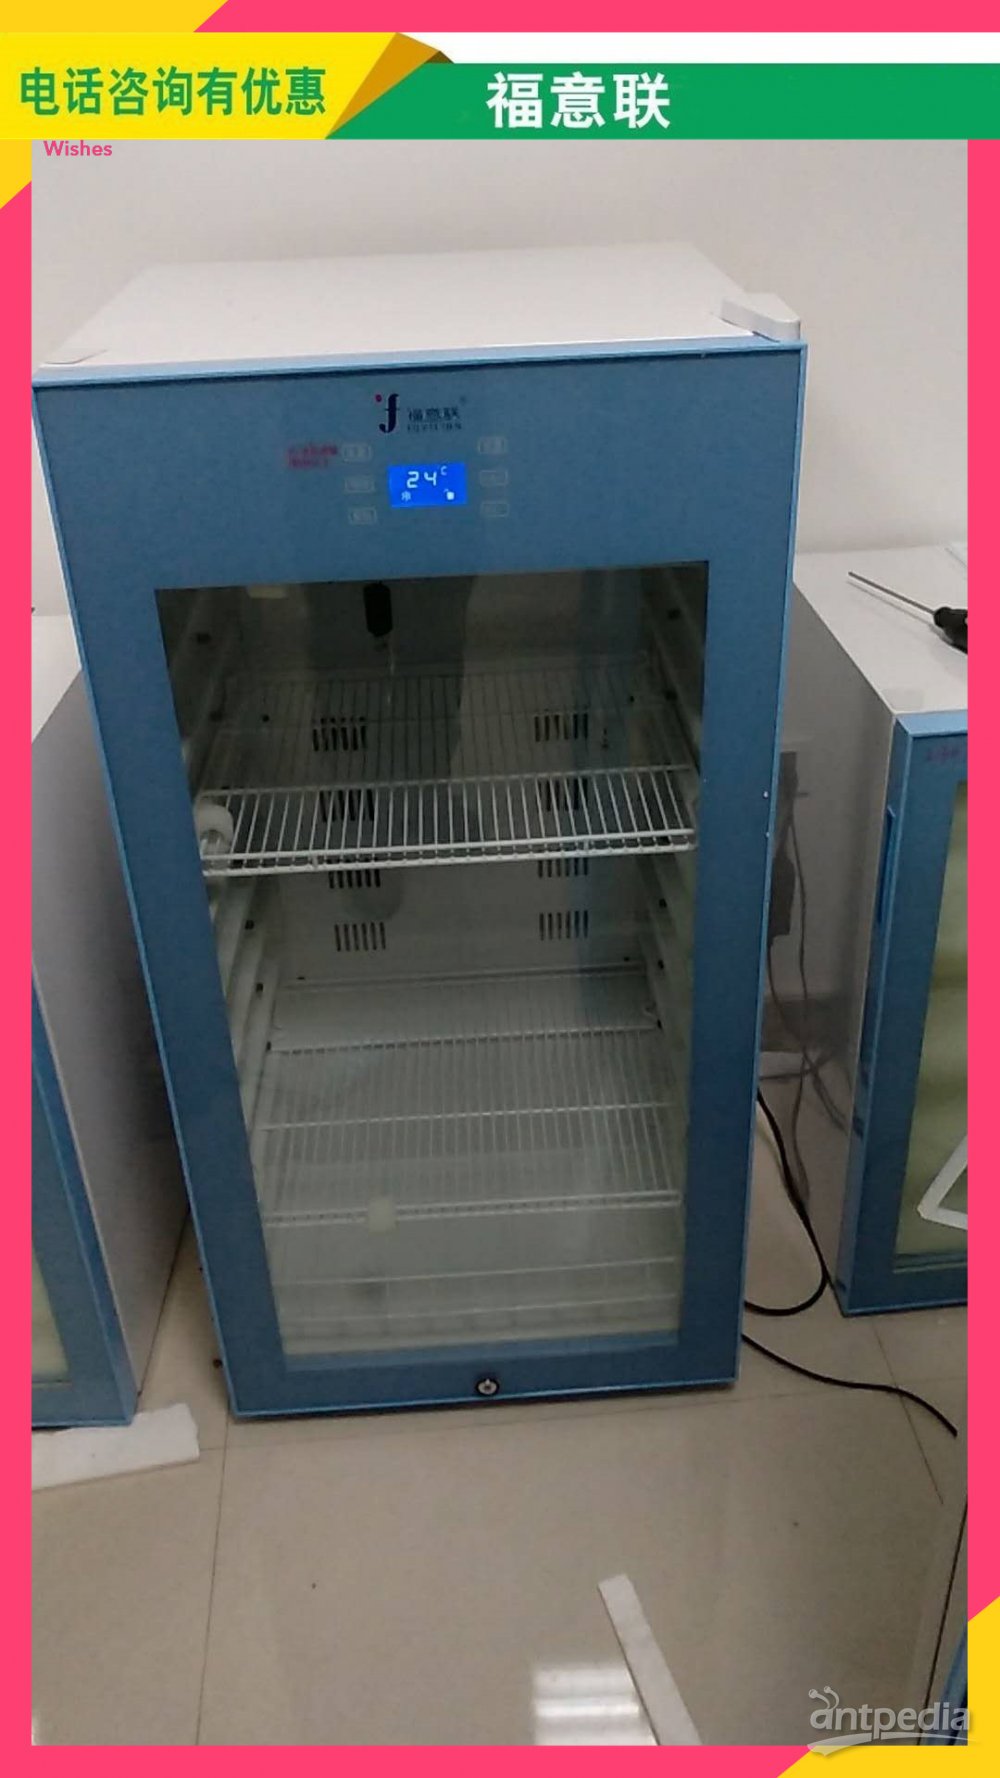 温度敏感型液体加温保存箱用途FYL-YS-230L